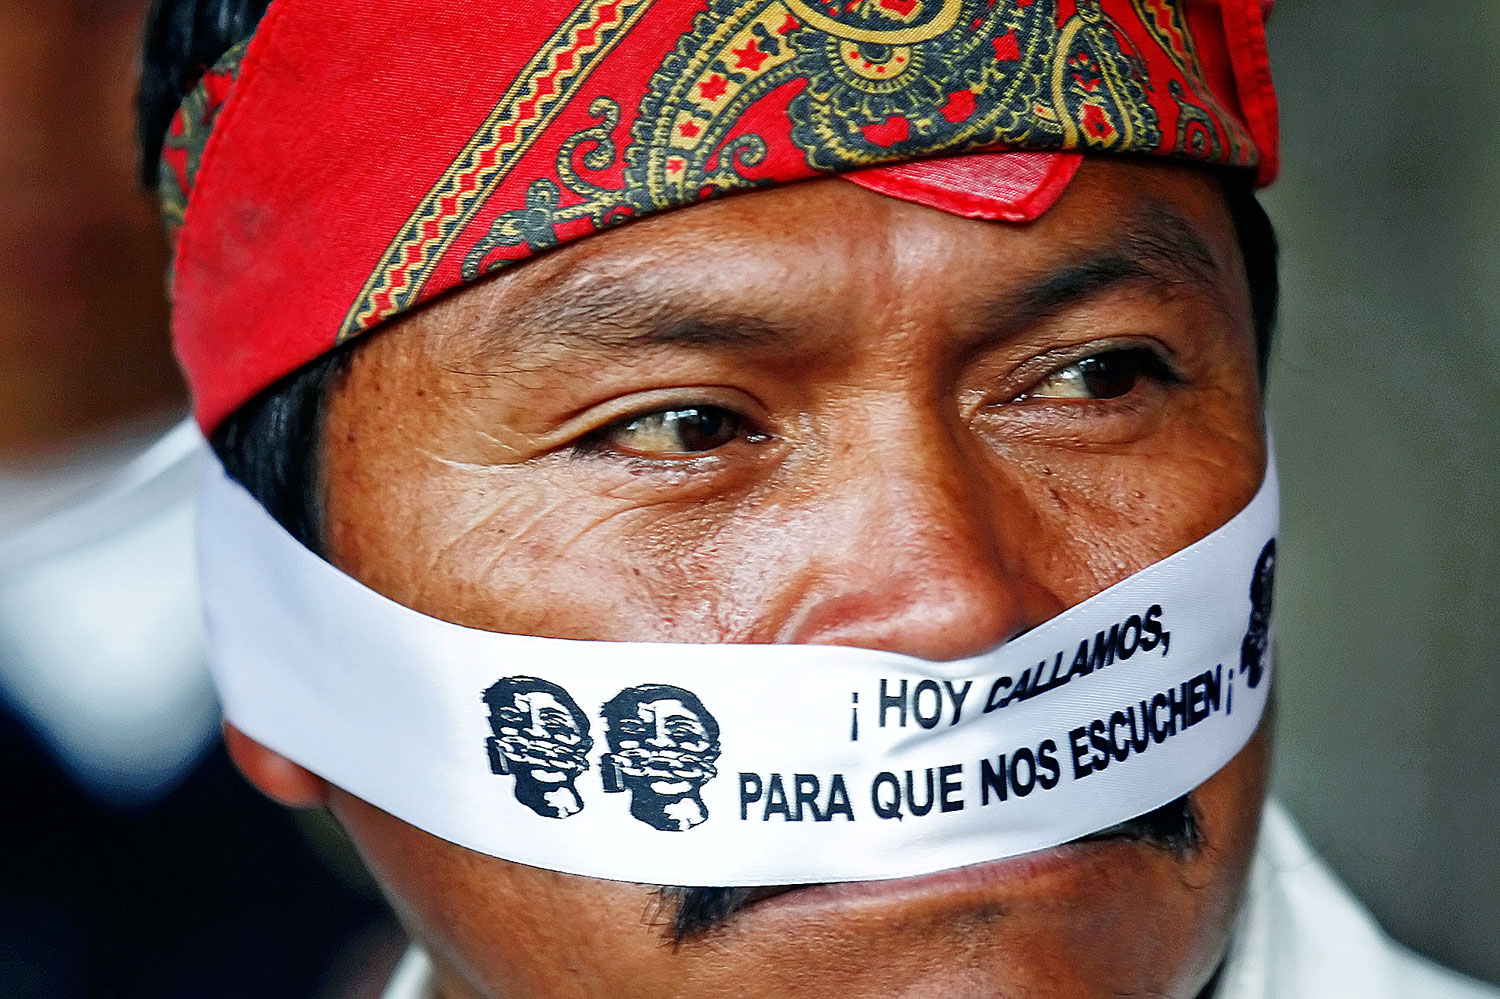 Egy oaxacai indián a nemzeti olajvállalat privatizációja ellen tüntet: „Ma hallgatunk, hogy meghallgassanak”